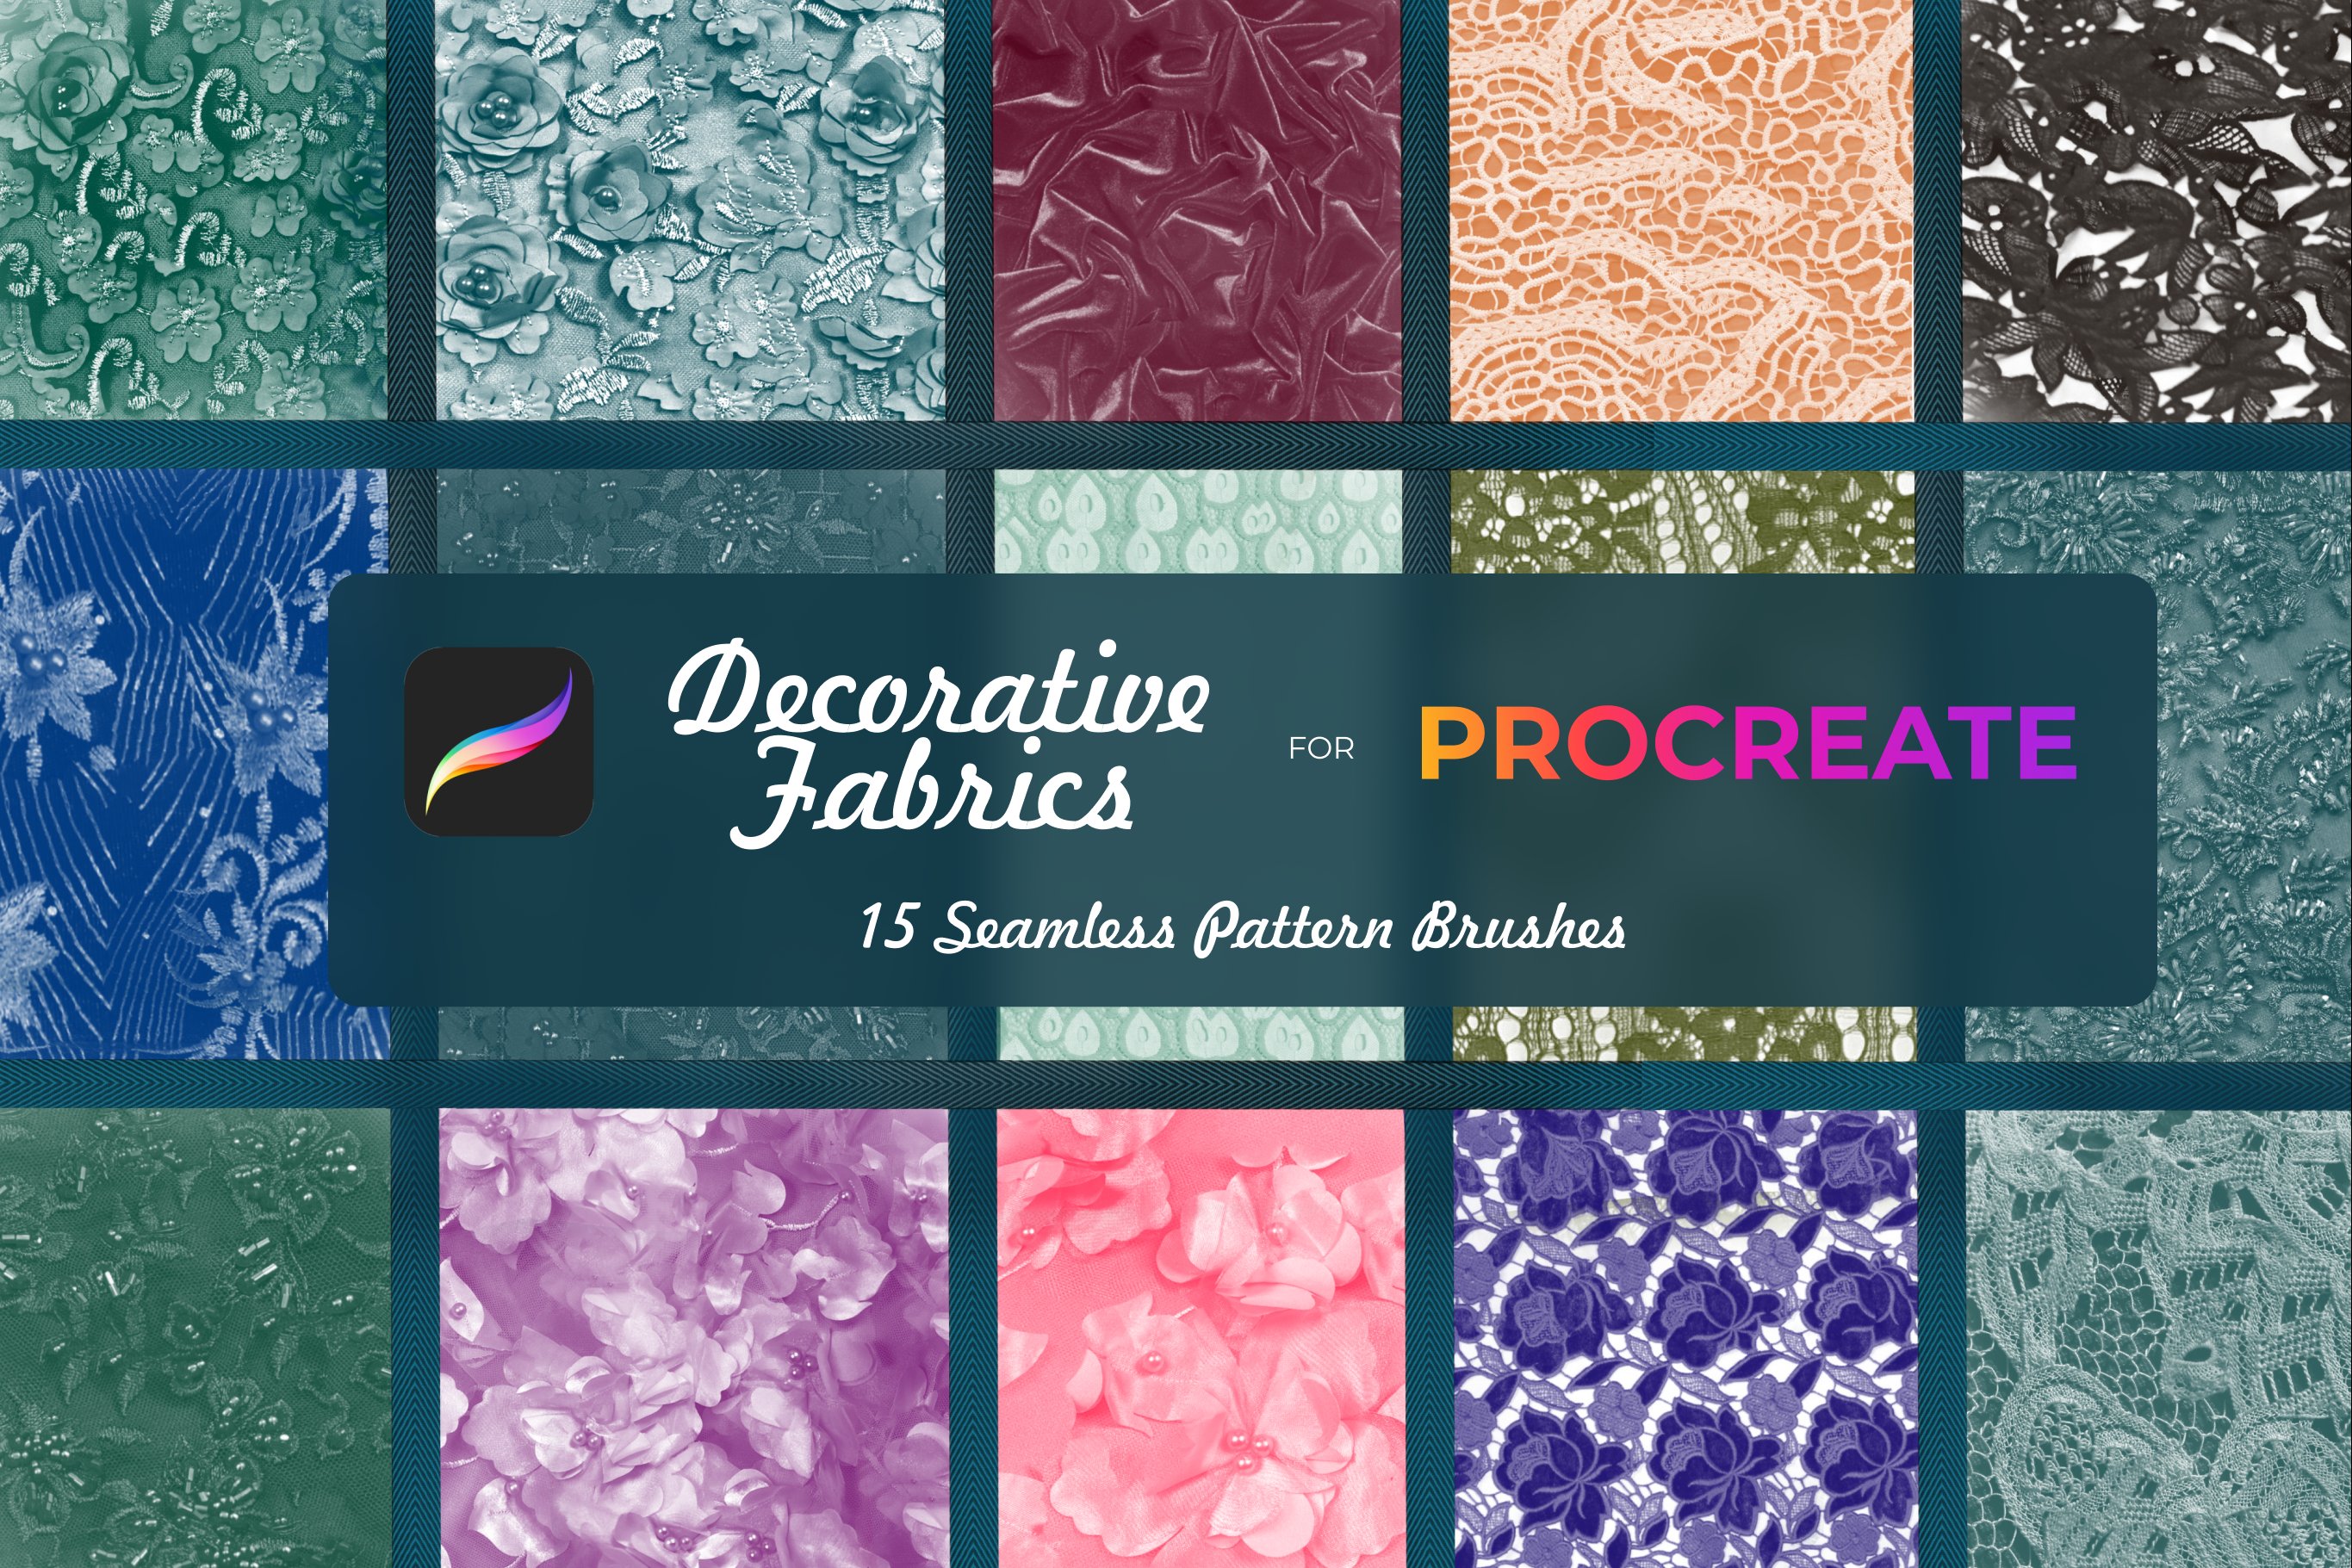 Decorative fabrics brushes Procreatecover image.